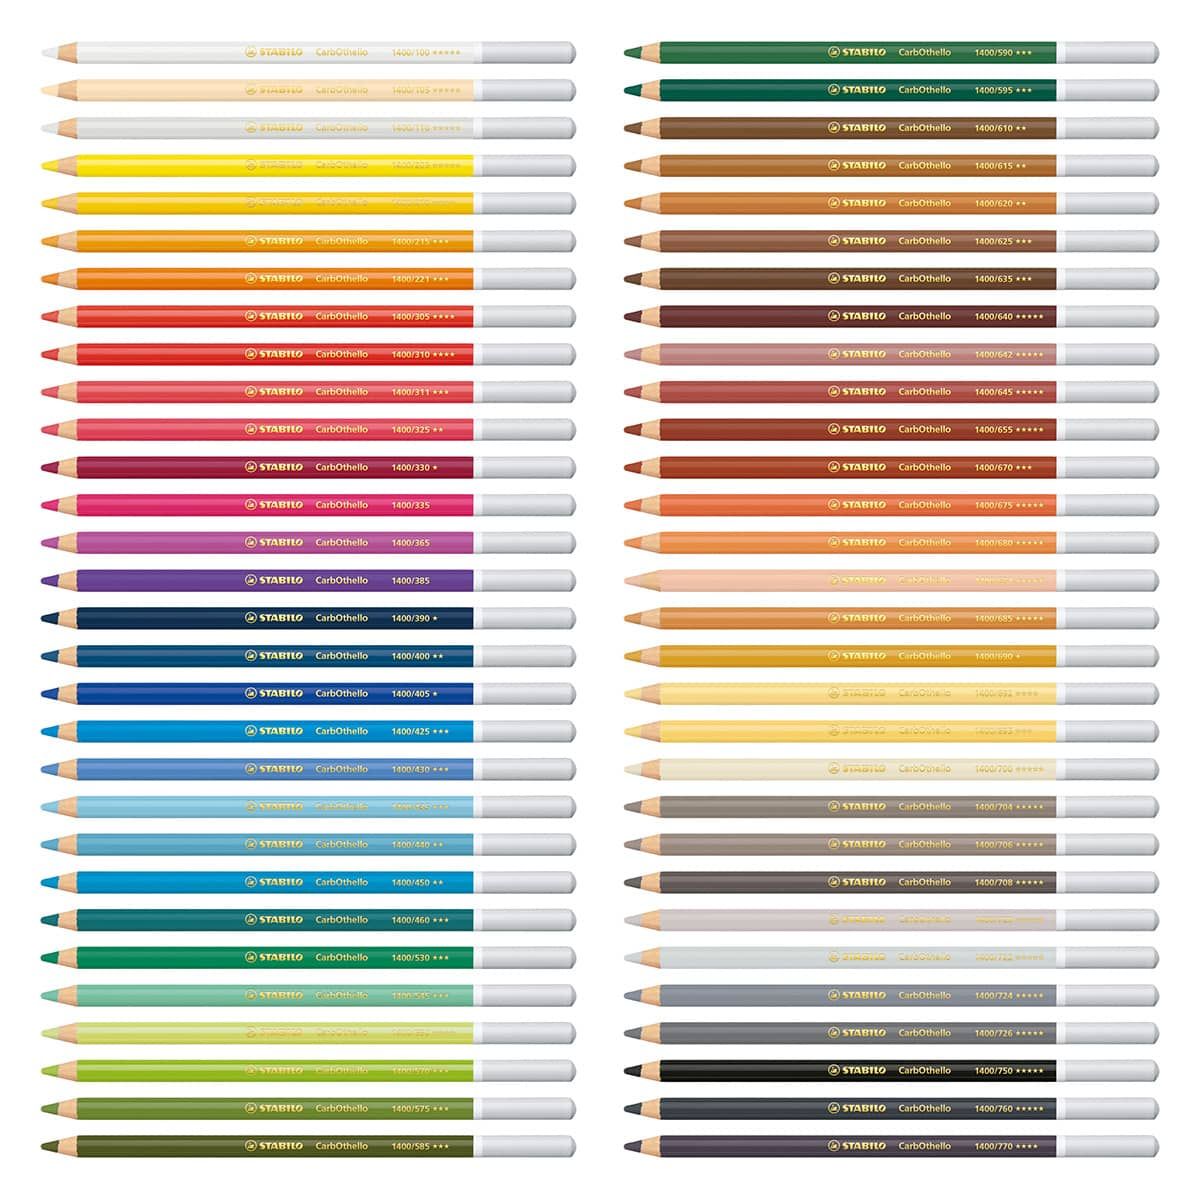 STABILO CarbOthello Pastel Pencil Set, 60-Color Set 